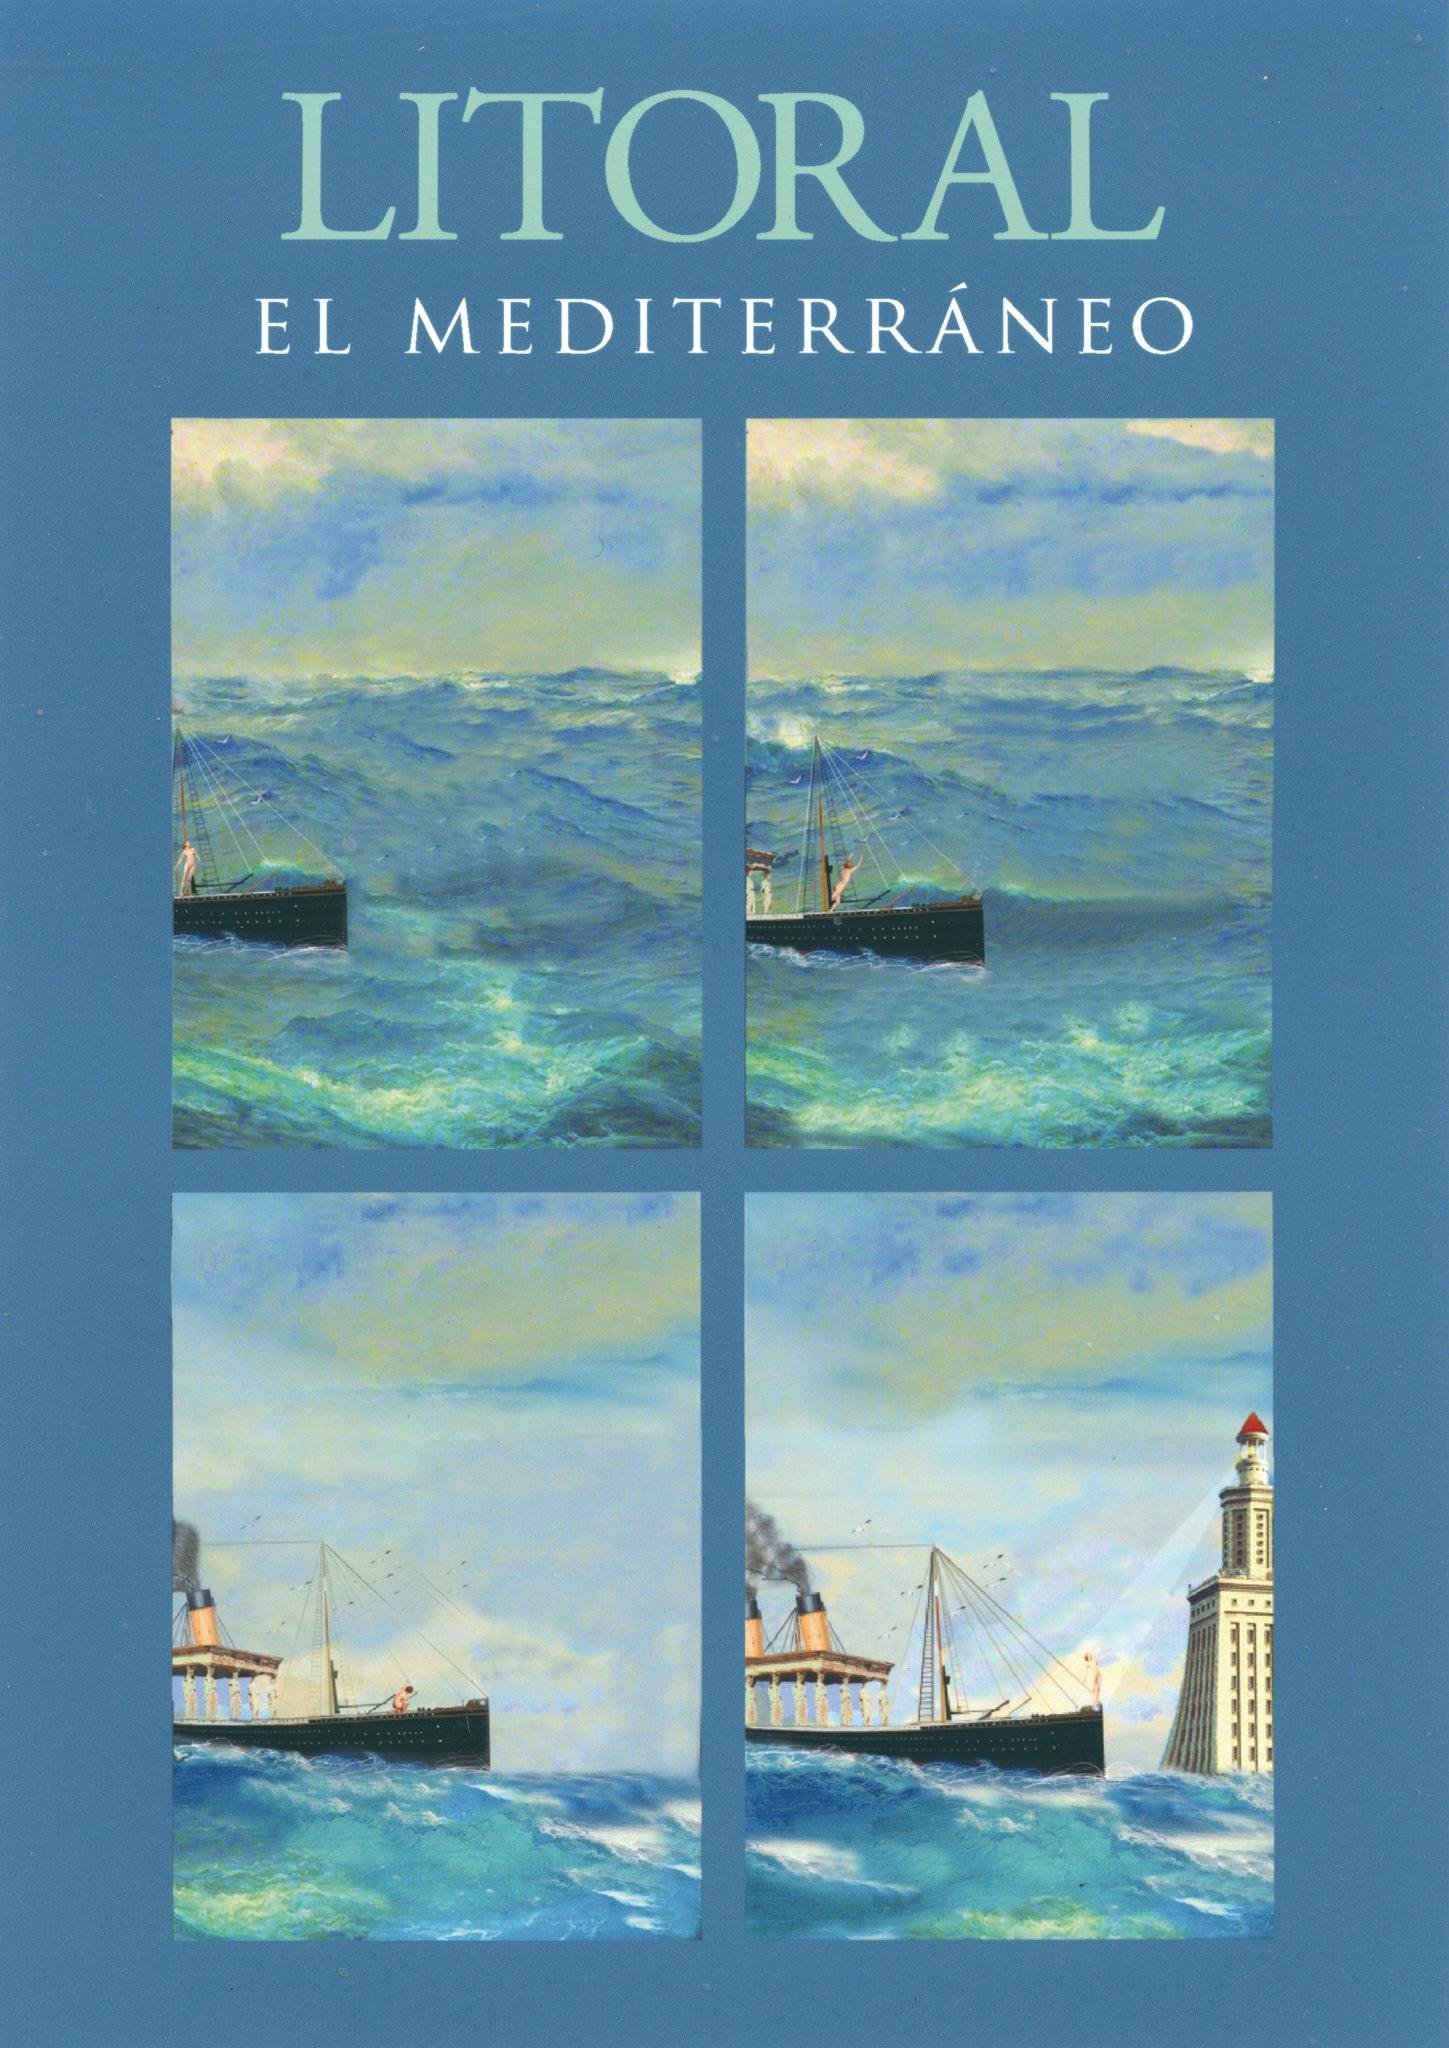 El Mediterráneo Revista Litoral